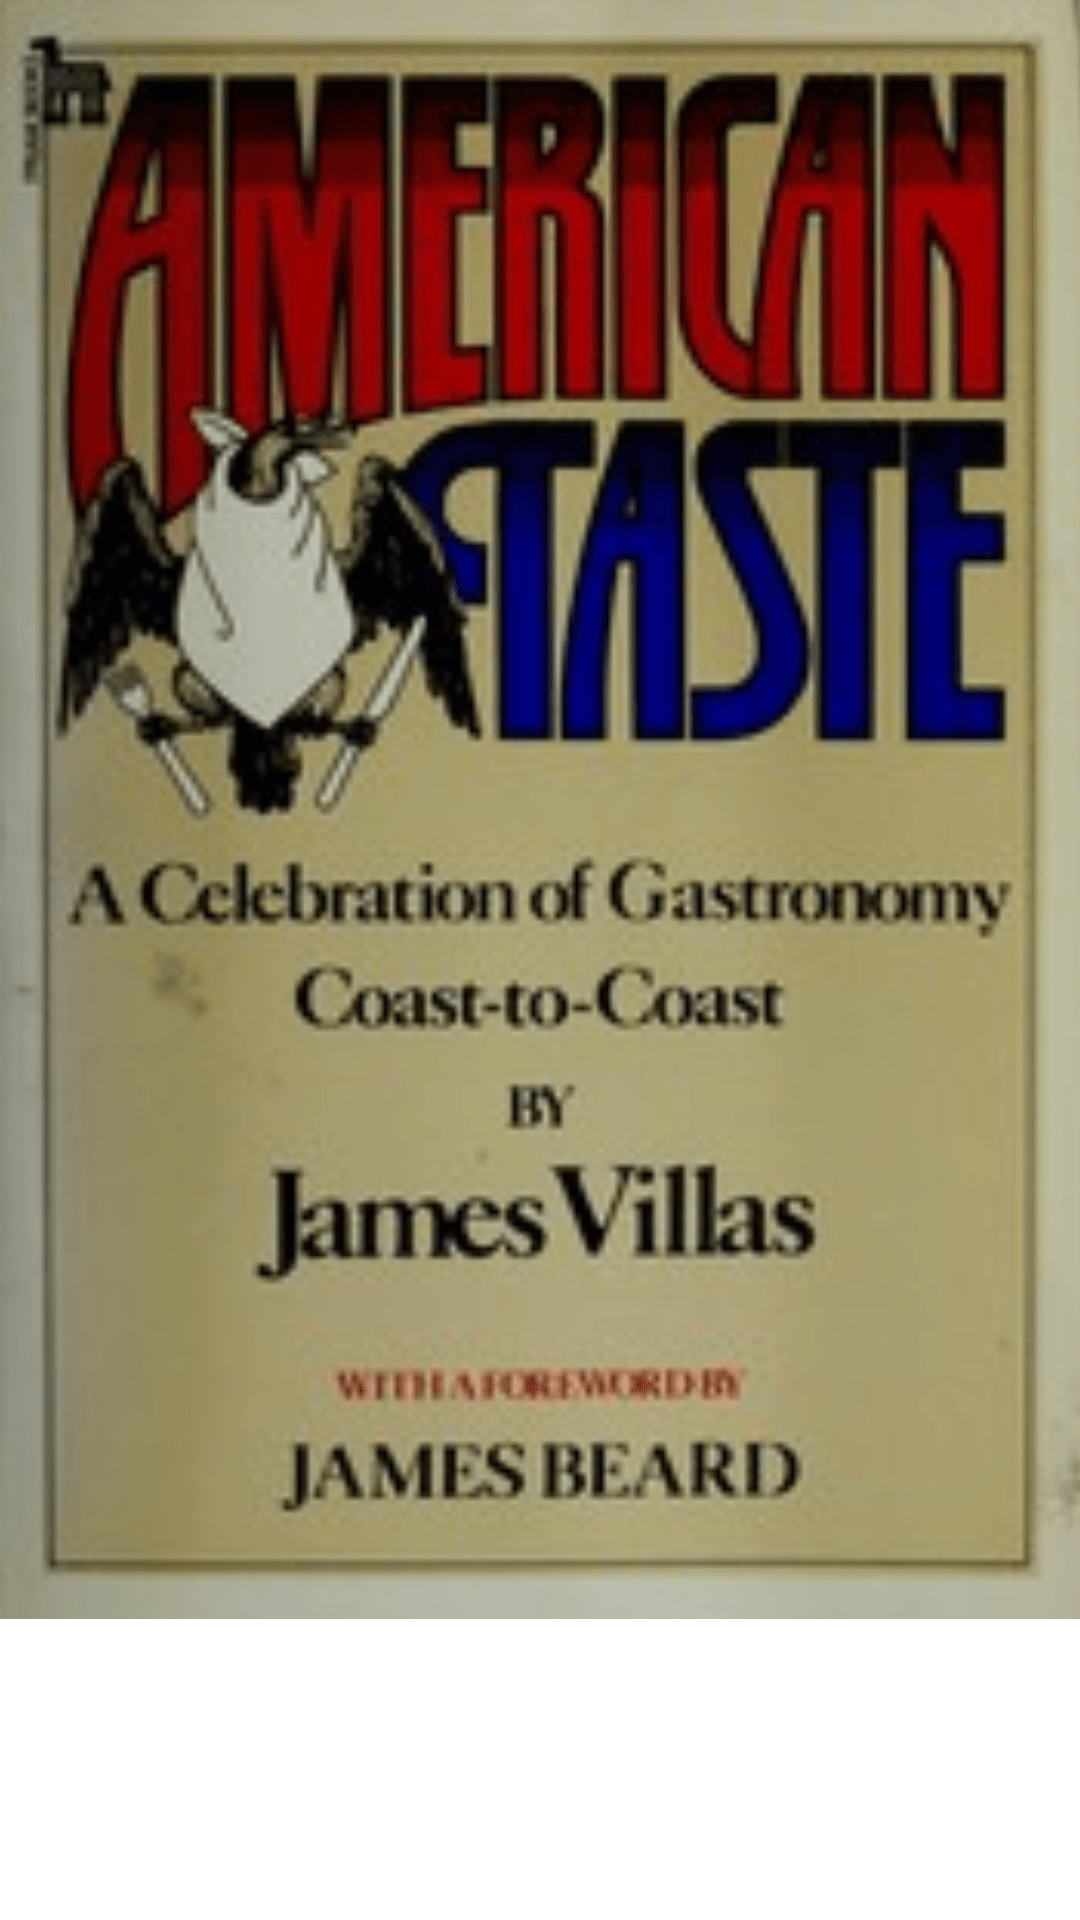 American Taste by James Villas